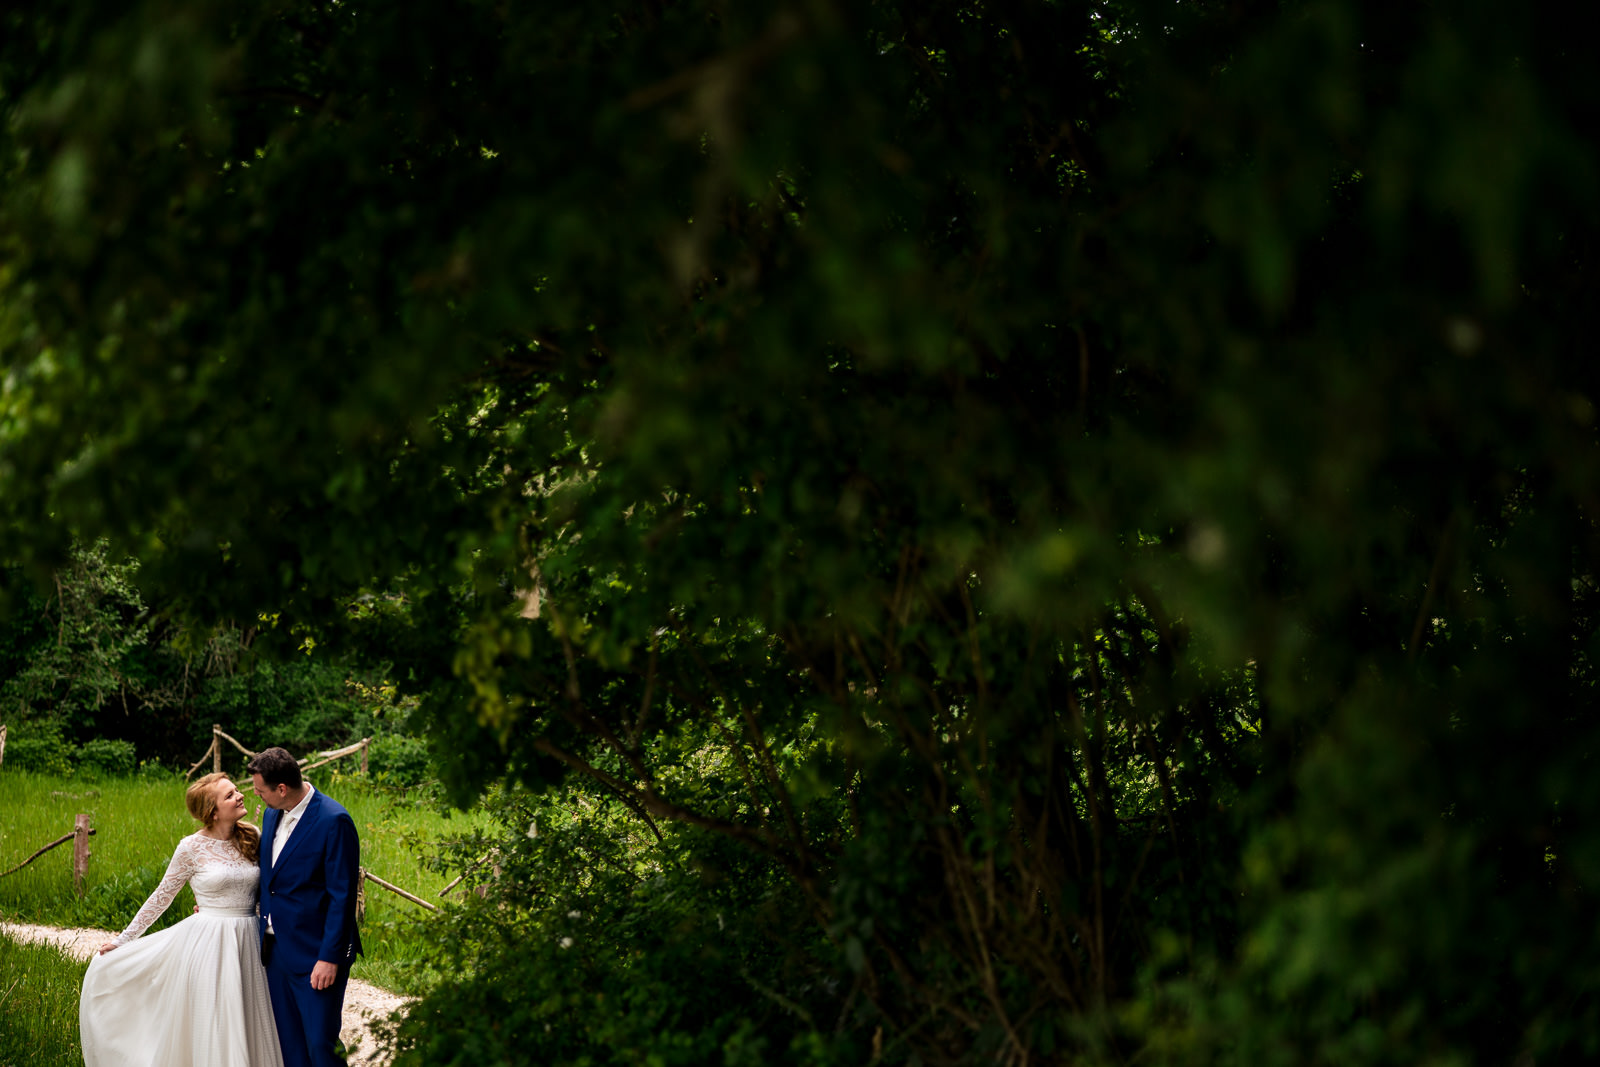 Trouwfotograaf Den Haag fotoshoot in een park met bruidspaar